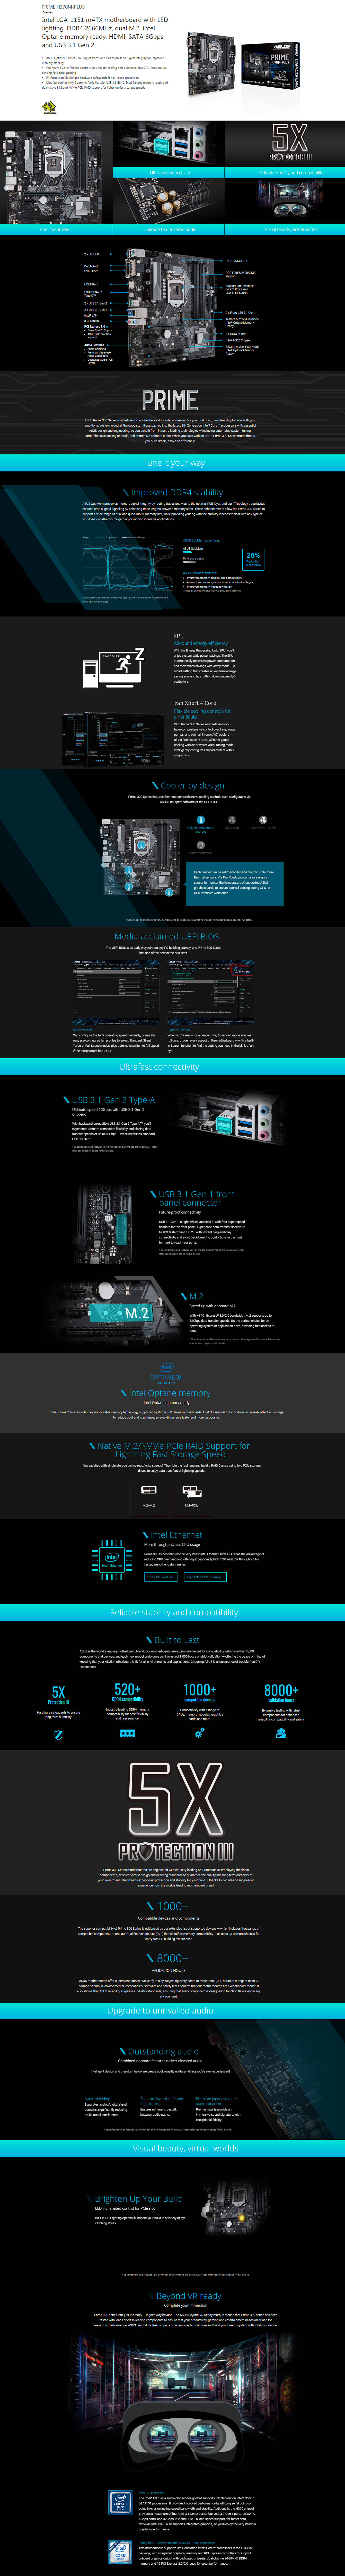  Buy Online Asus Prime H370M-PLUS 8th Gen Intel Motherboard